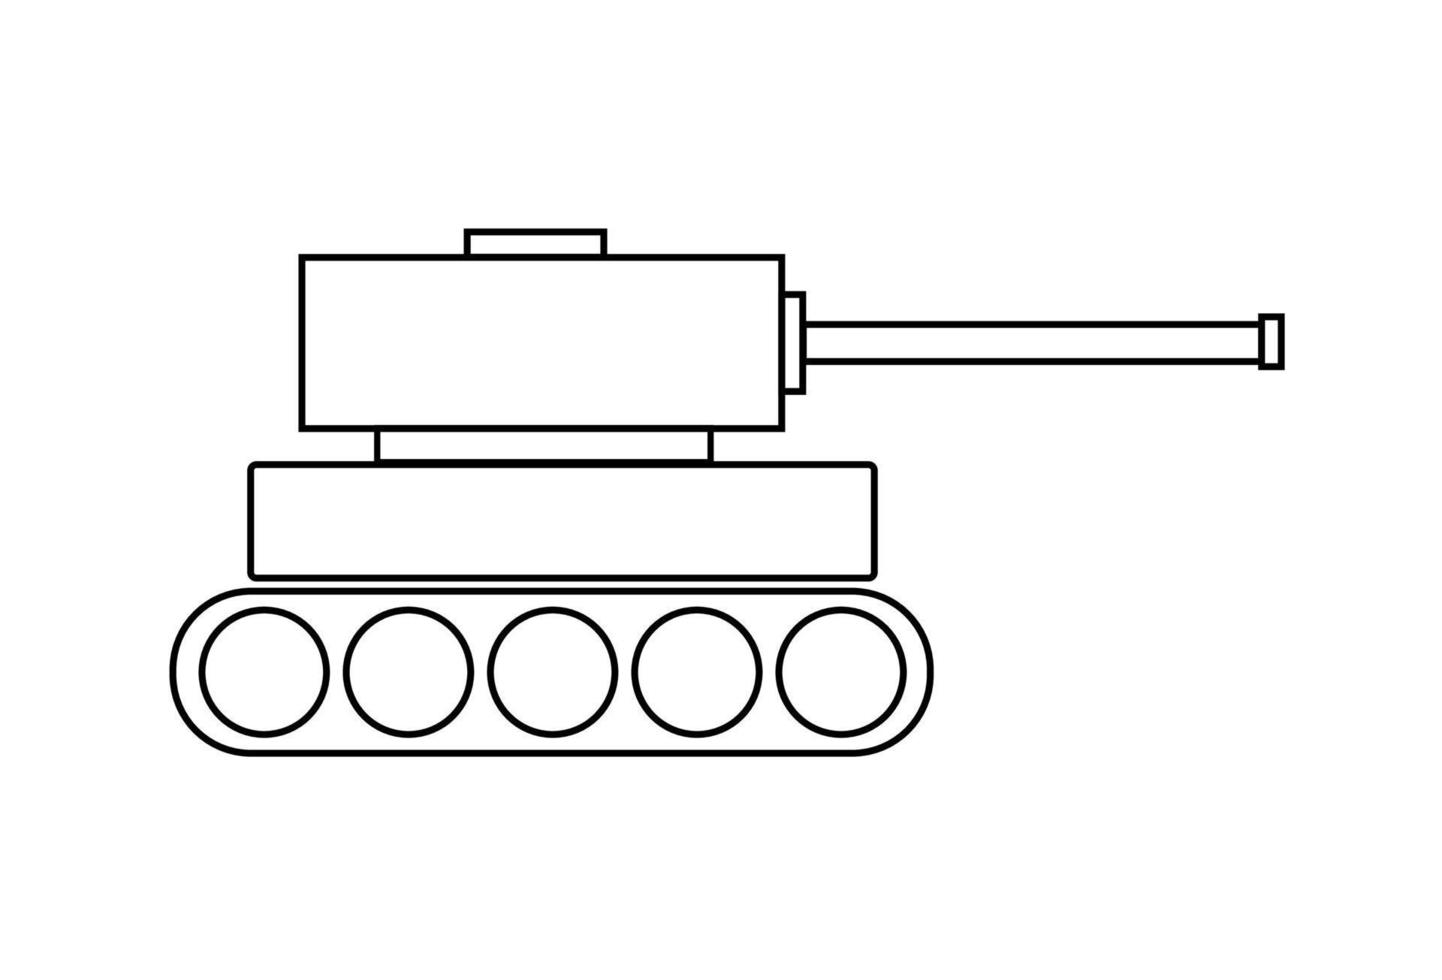 grünlich gefärbter Militärpanzer. Illustration des Militärpanzers im Krieg. Vektorsymbol für militärische Panzer. Tank isoliert auf weißem Hintergrund. vektor